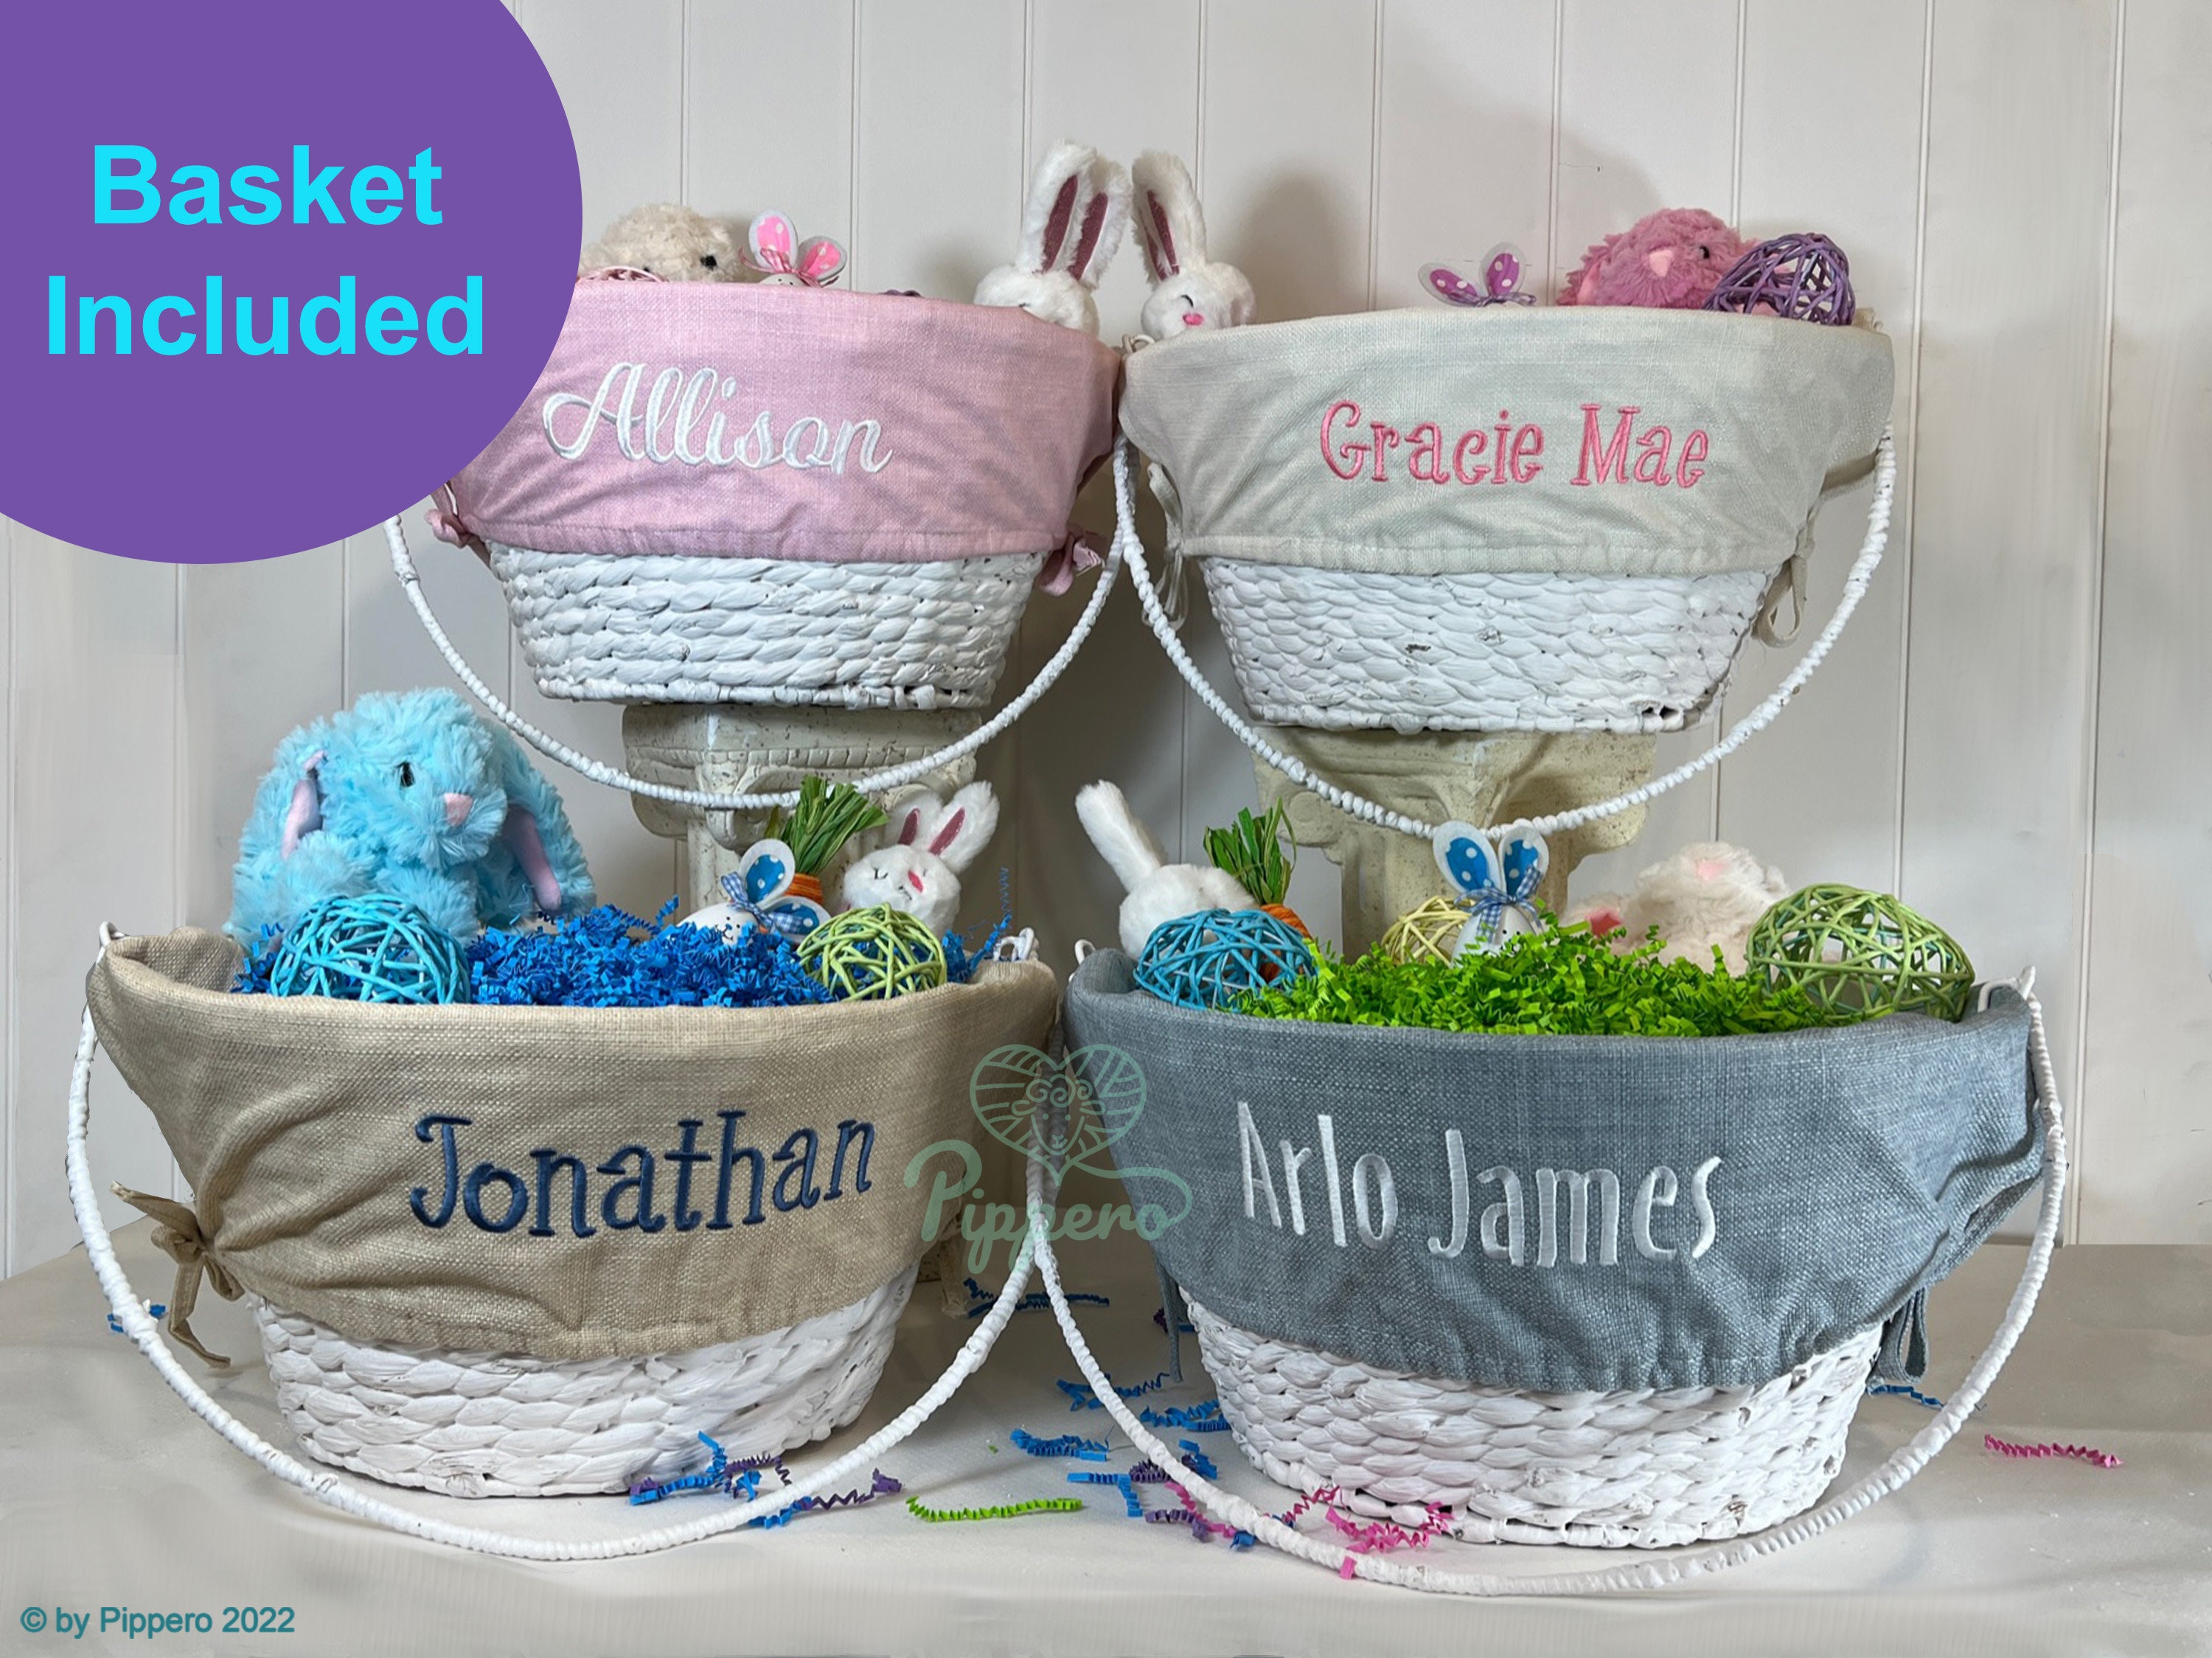 Natural Personalized Easter Basket Liner – Porter Lane Home